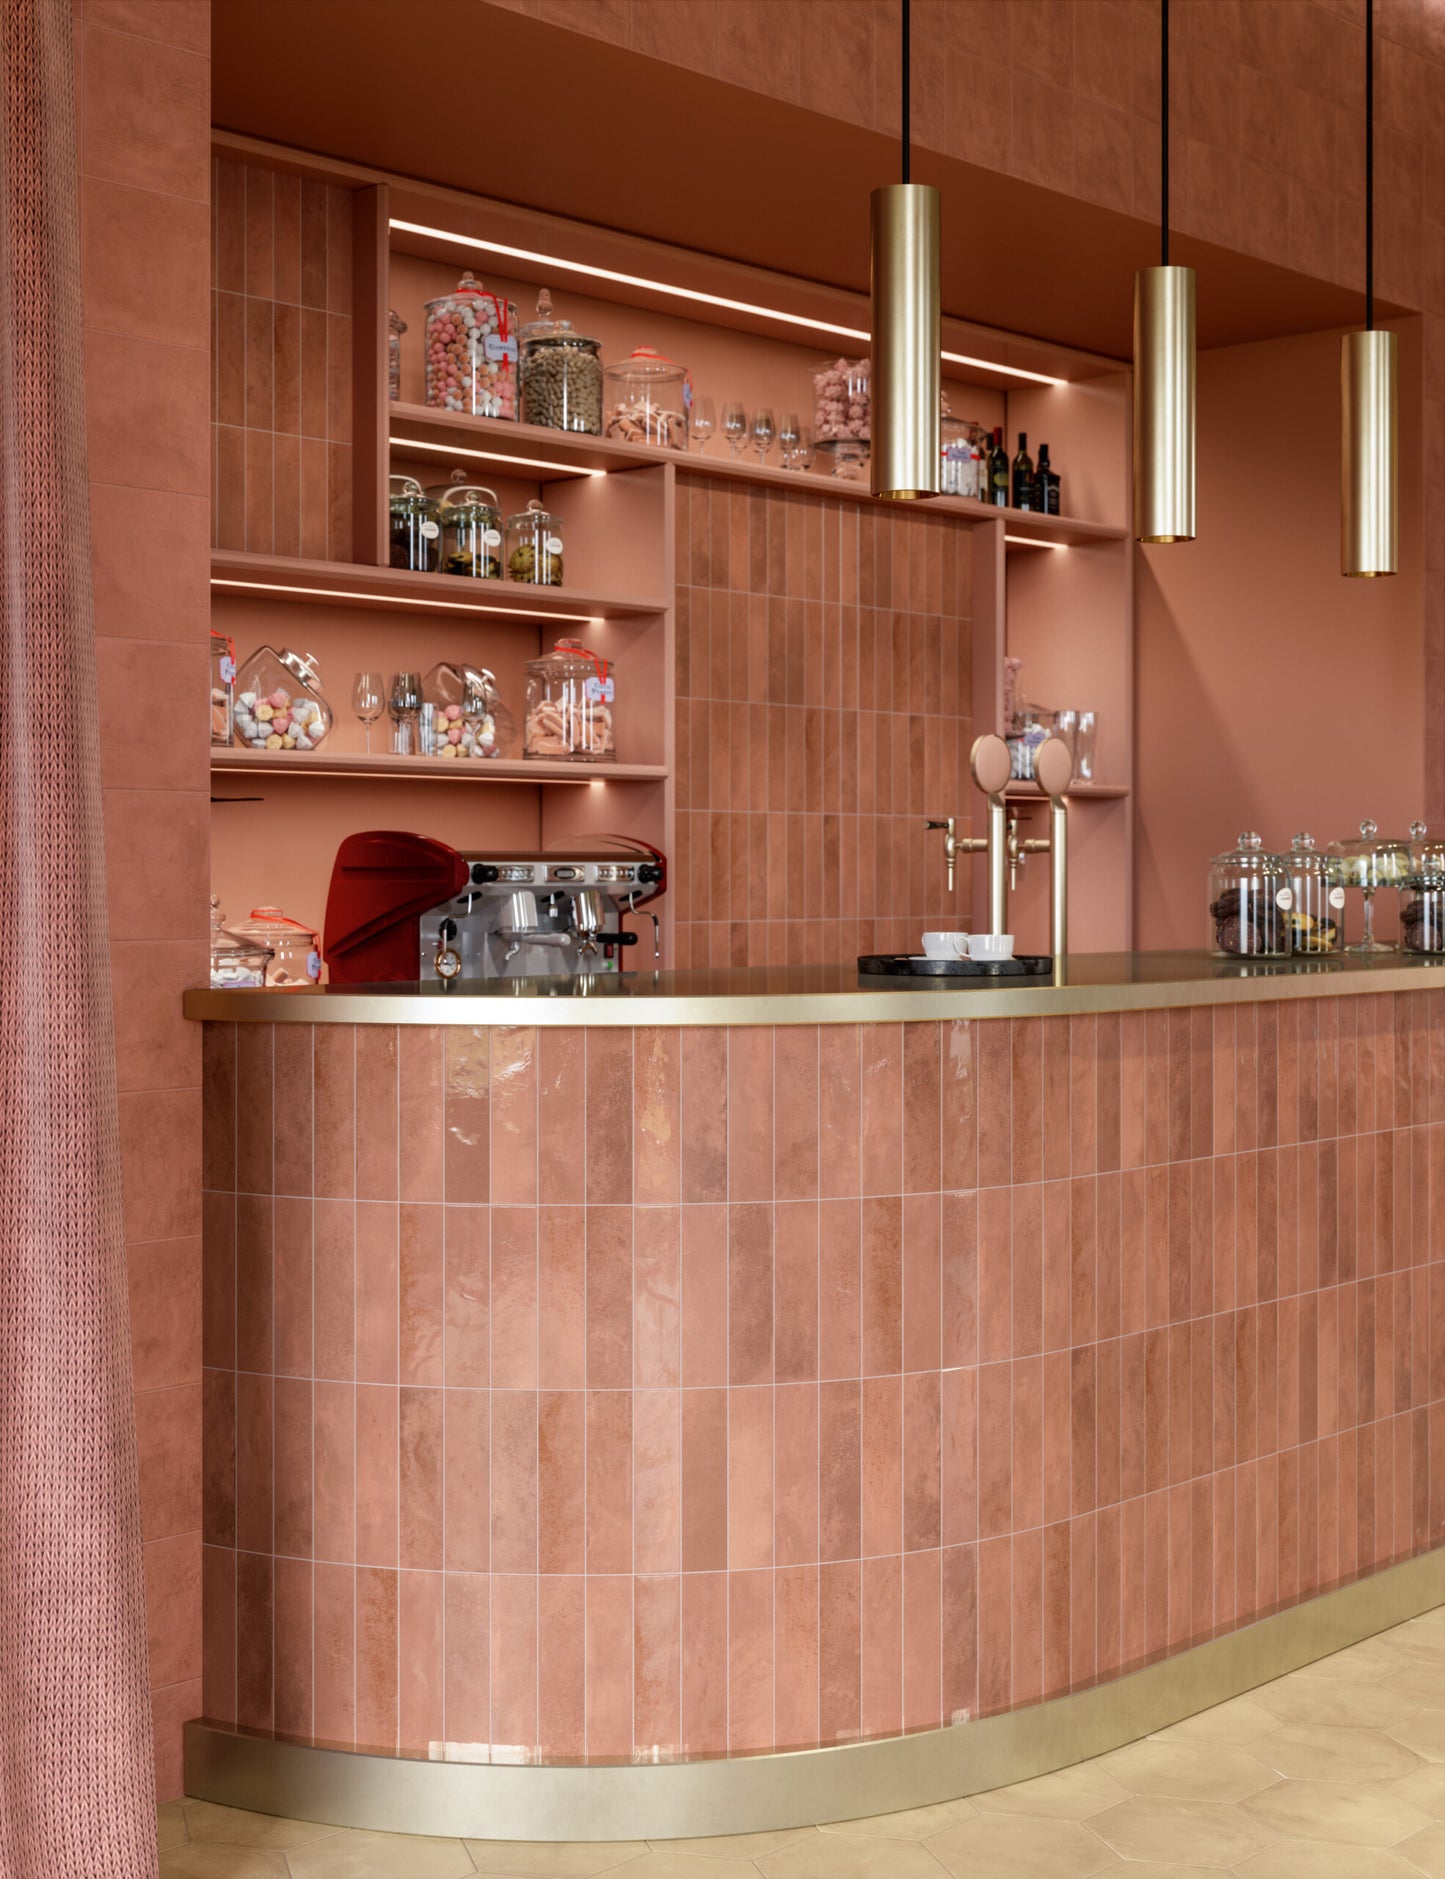 Barra de soda con temática de dulcería, con muros en tono rosa rojizo y acentos en dorado